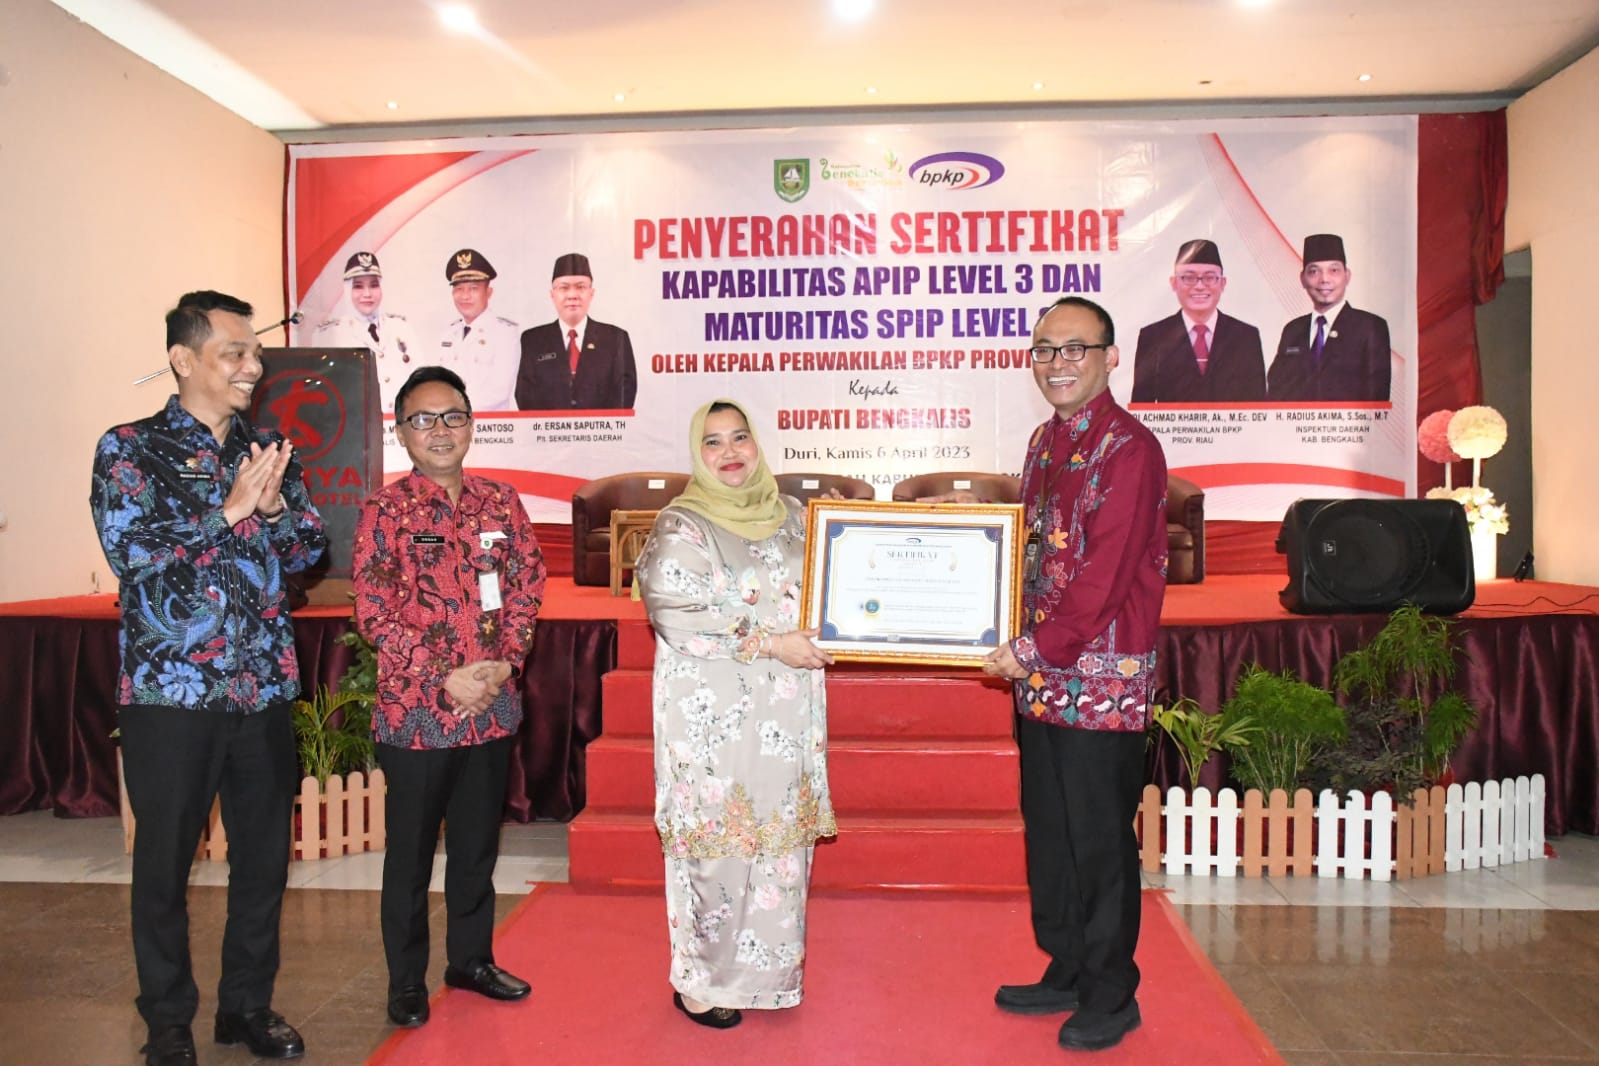 Selamat, Pemkab Bengkalis Raih 3 Sertifikat Sekaligus dari Perwakilan BPKP Provinsi Riau 